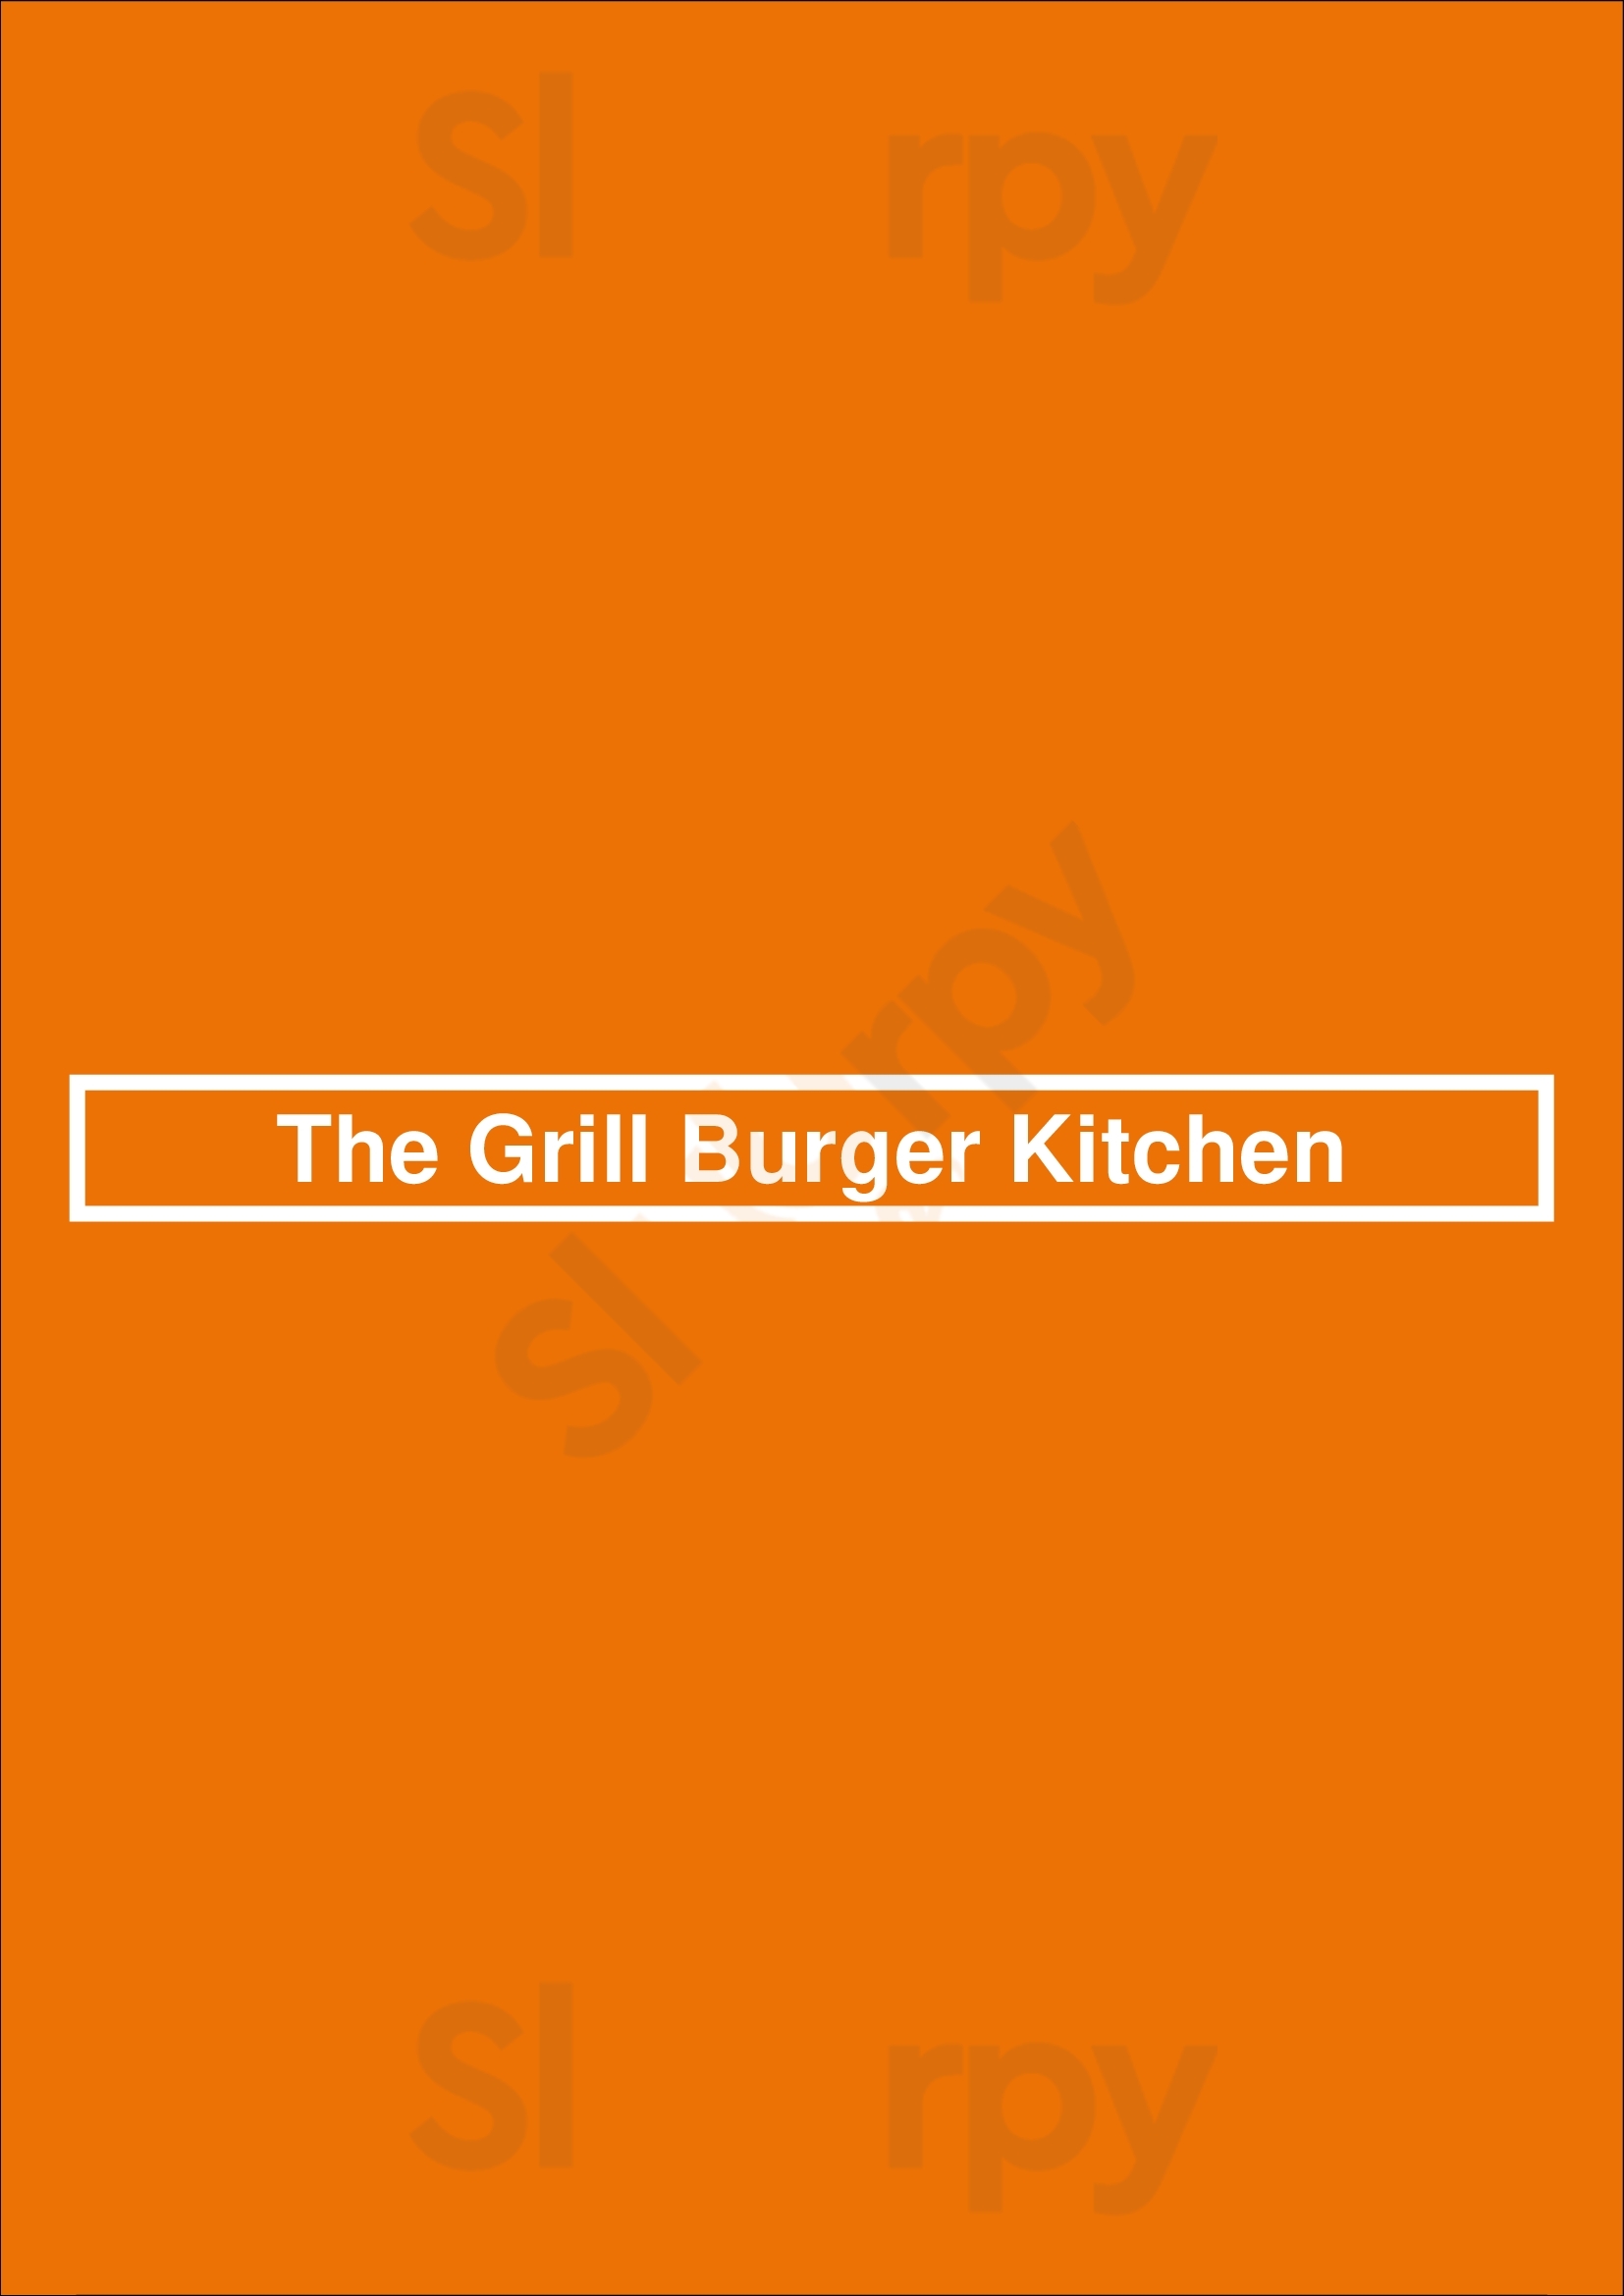 The Grill Burger Kitchen Kitchener Menu - 1